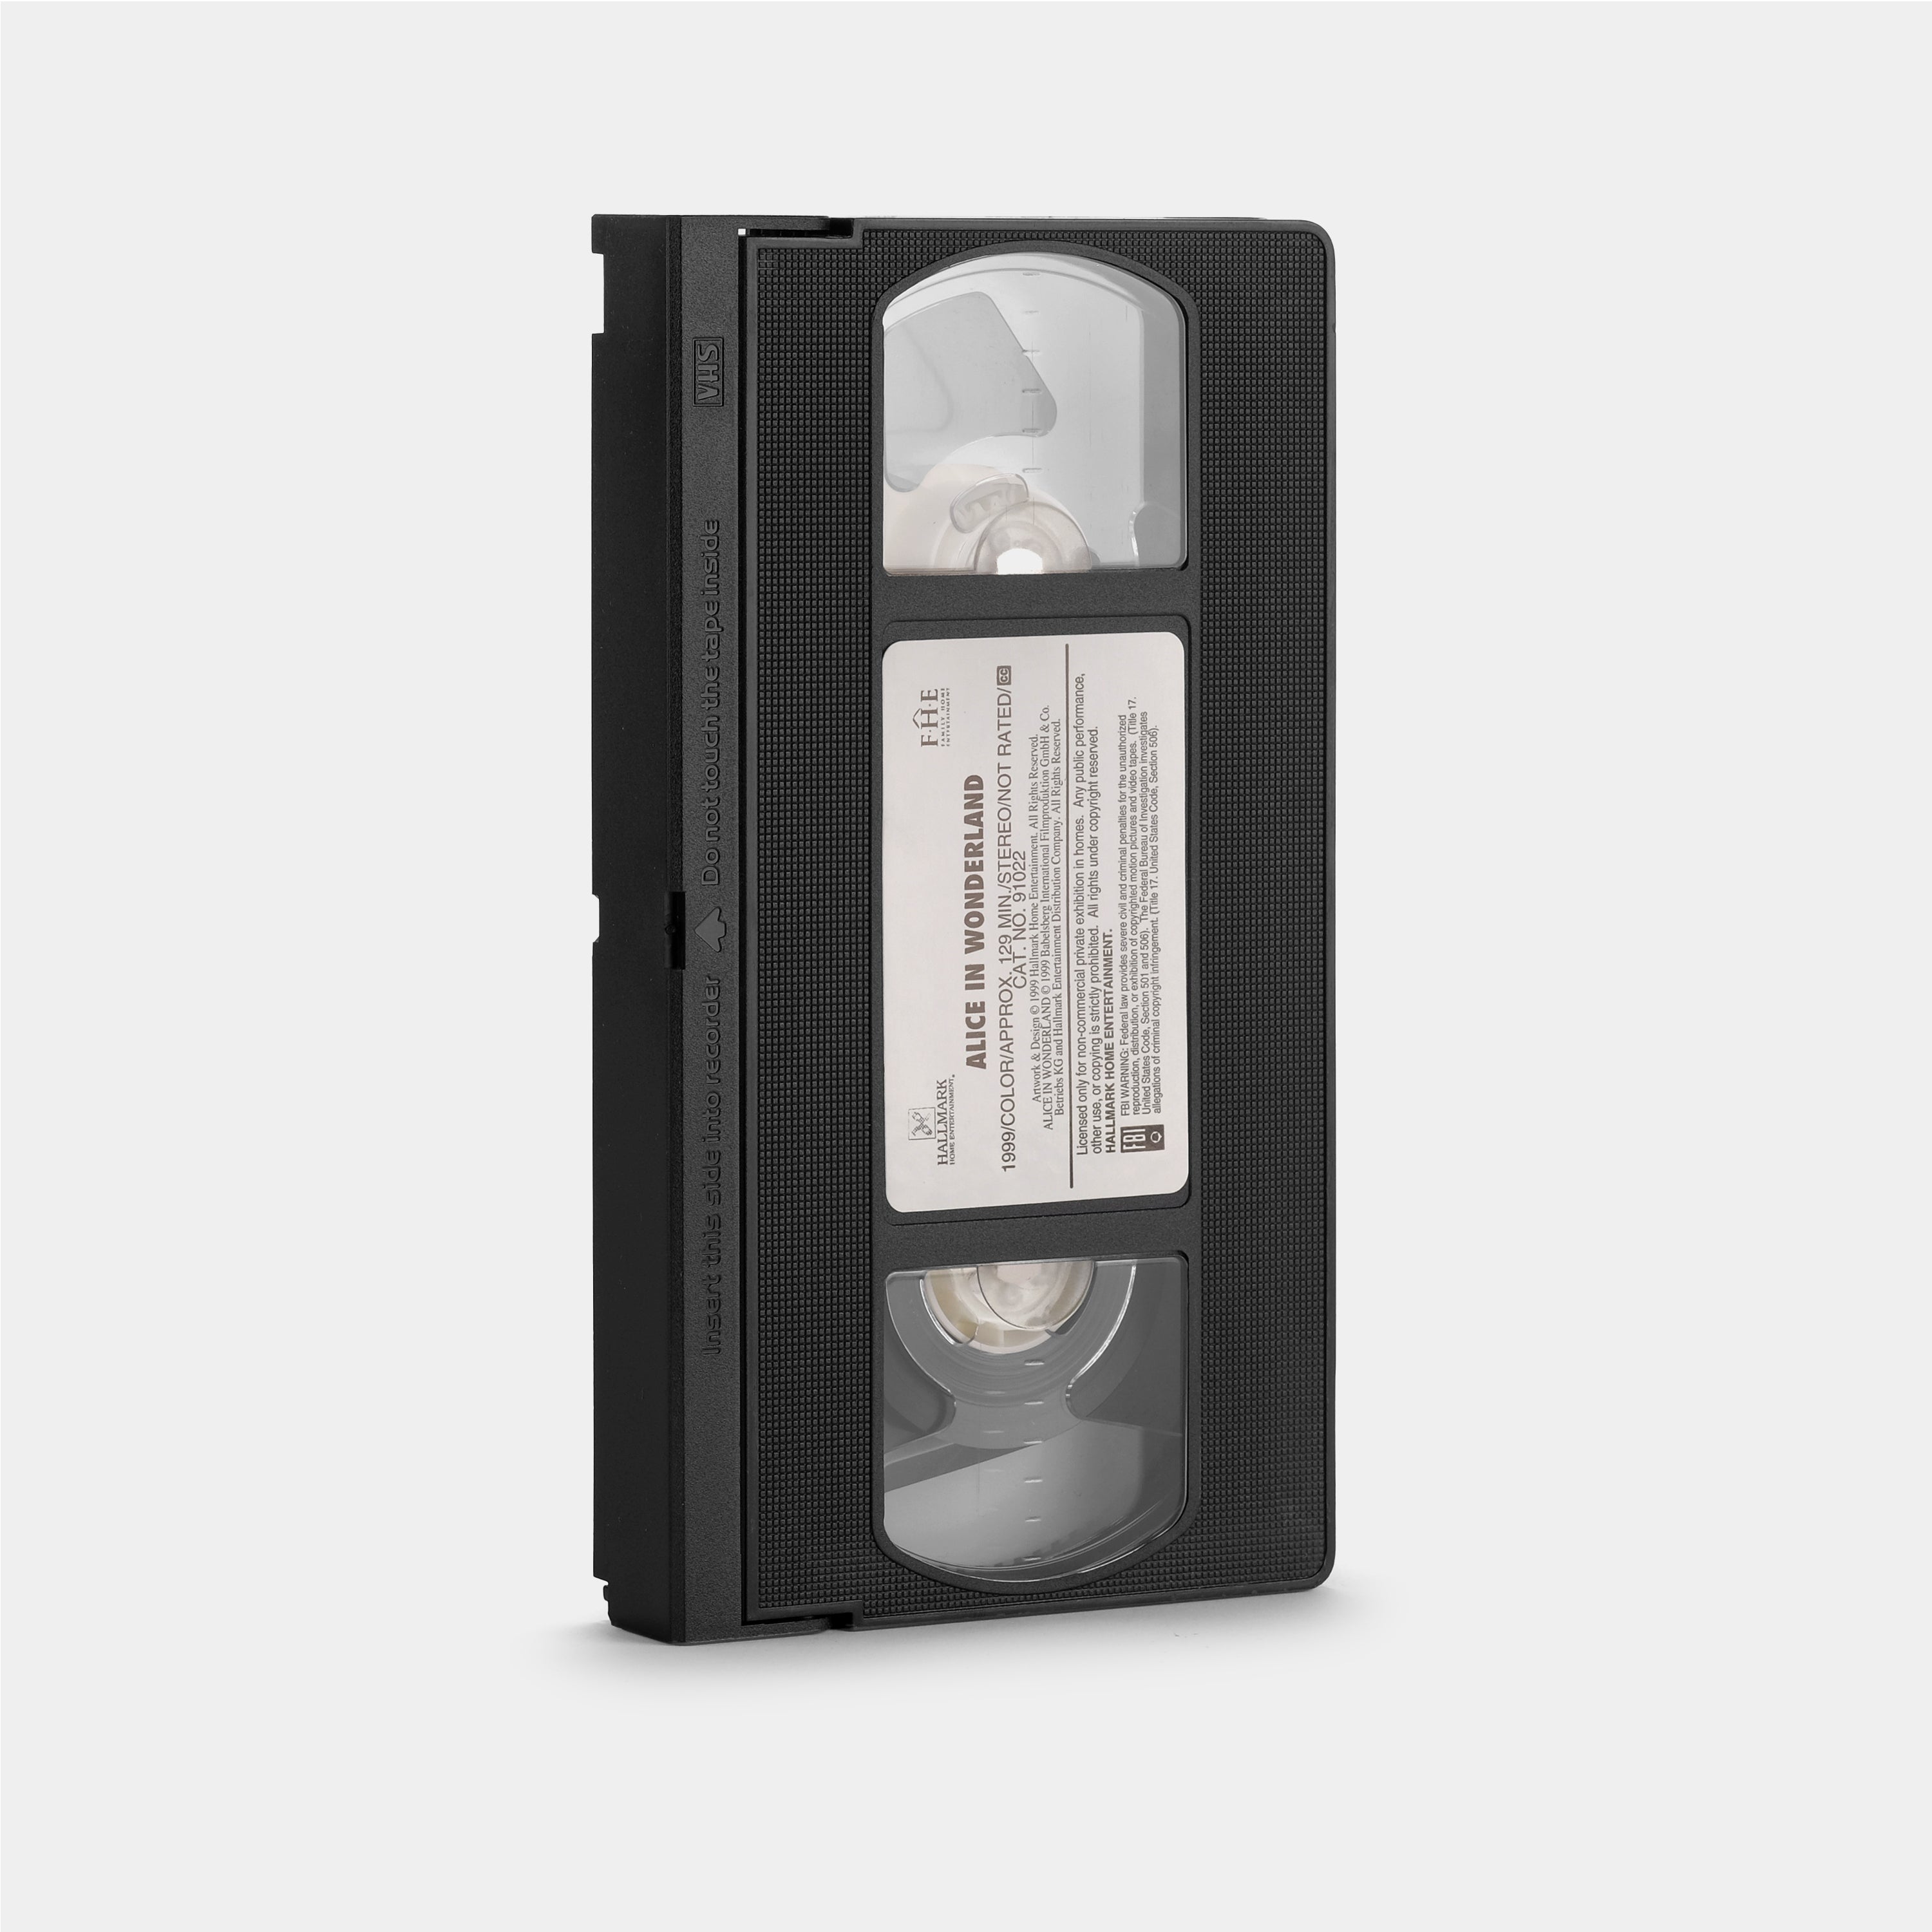 Alice in Wonderland VHS Tape